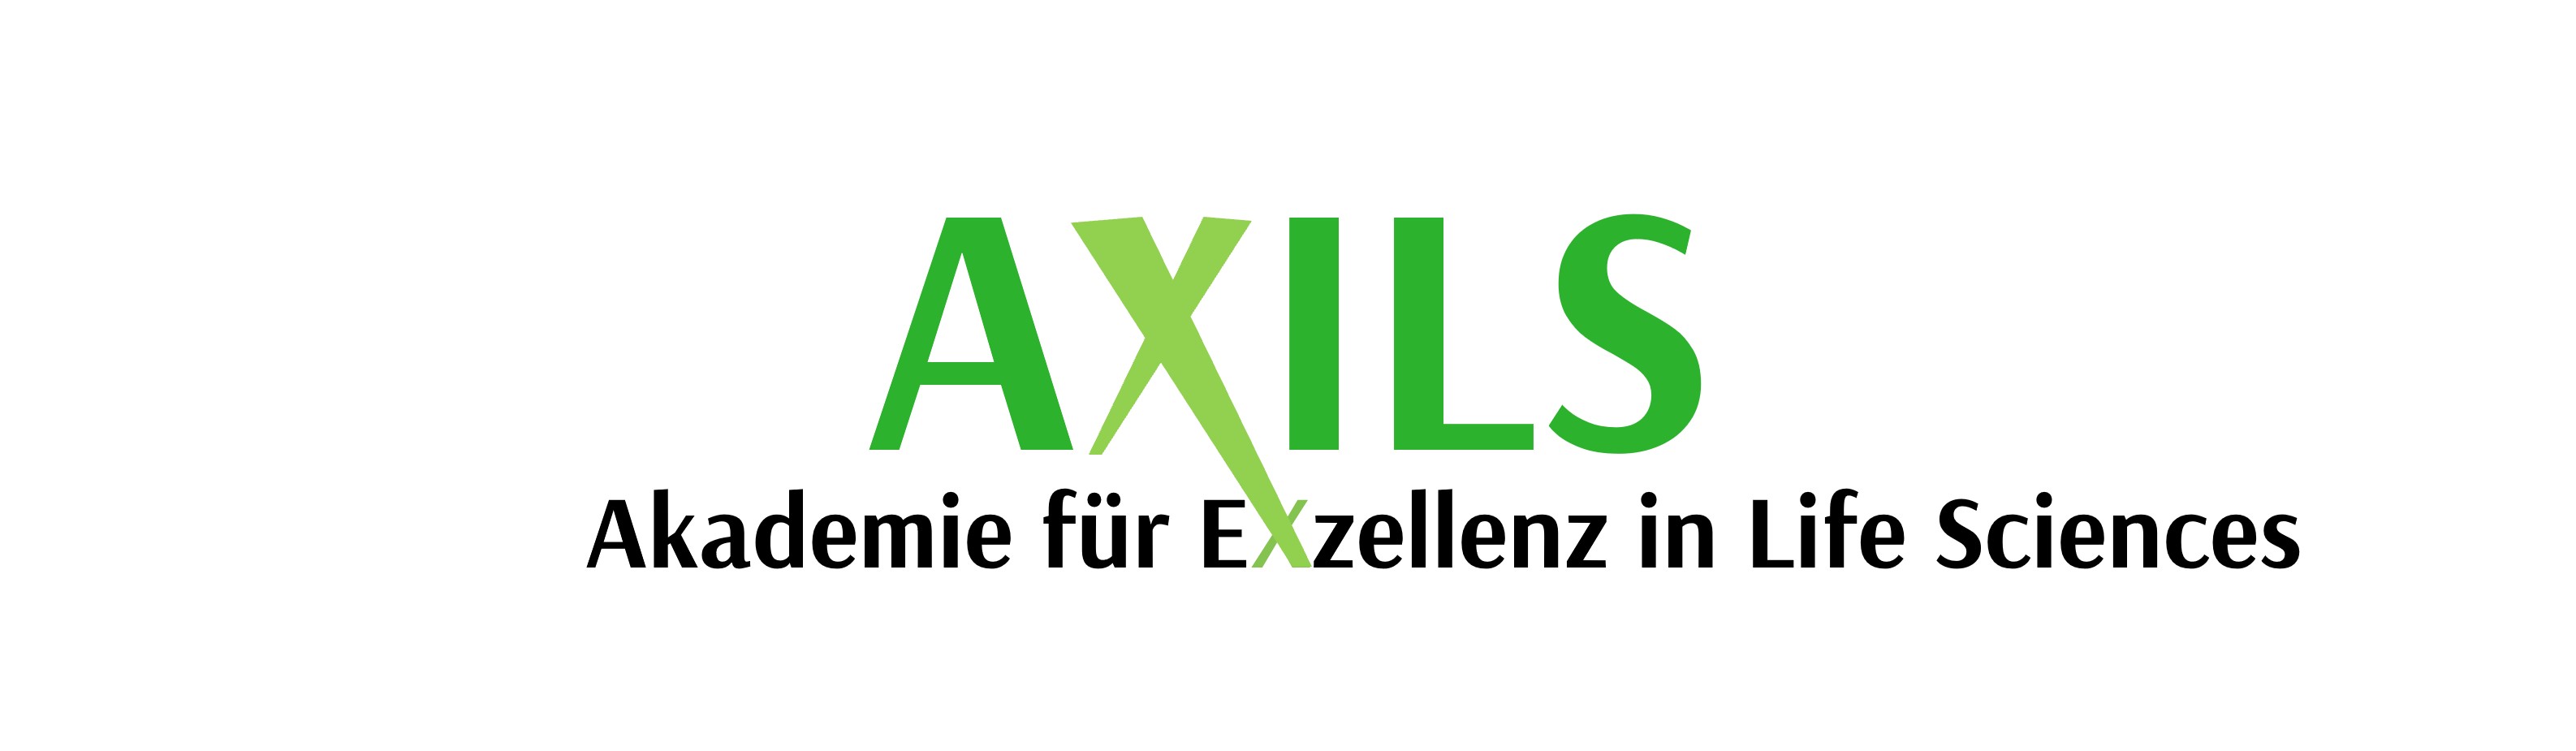 Logo: Axils in grüner Schrift und darunter in schwarzer Schrift Akademie für Exzellenz in Life Sciences